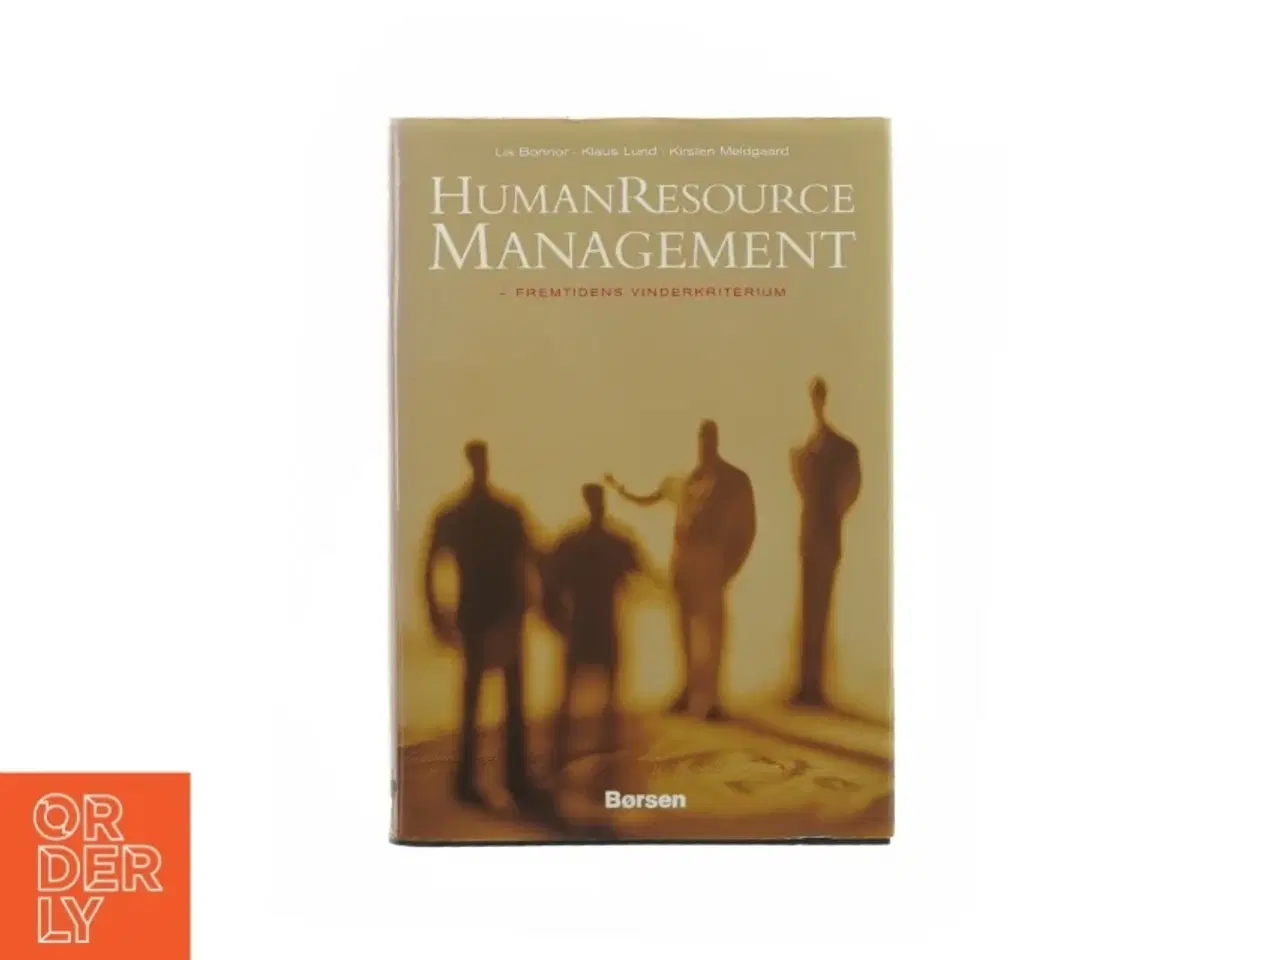 Billede 1 - Human Resource management - fremtidens vinderkriterium af Lis Bonner m.fl (bog)